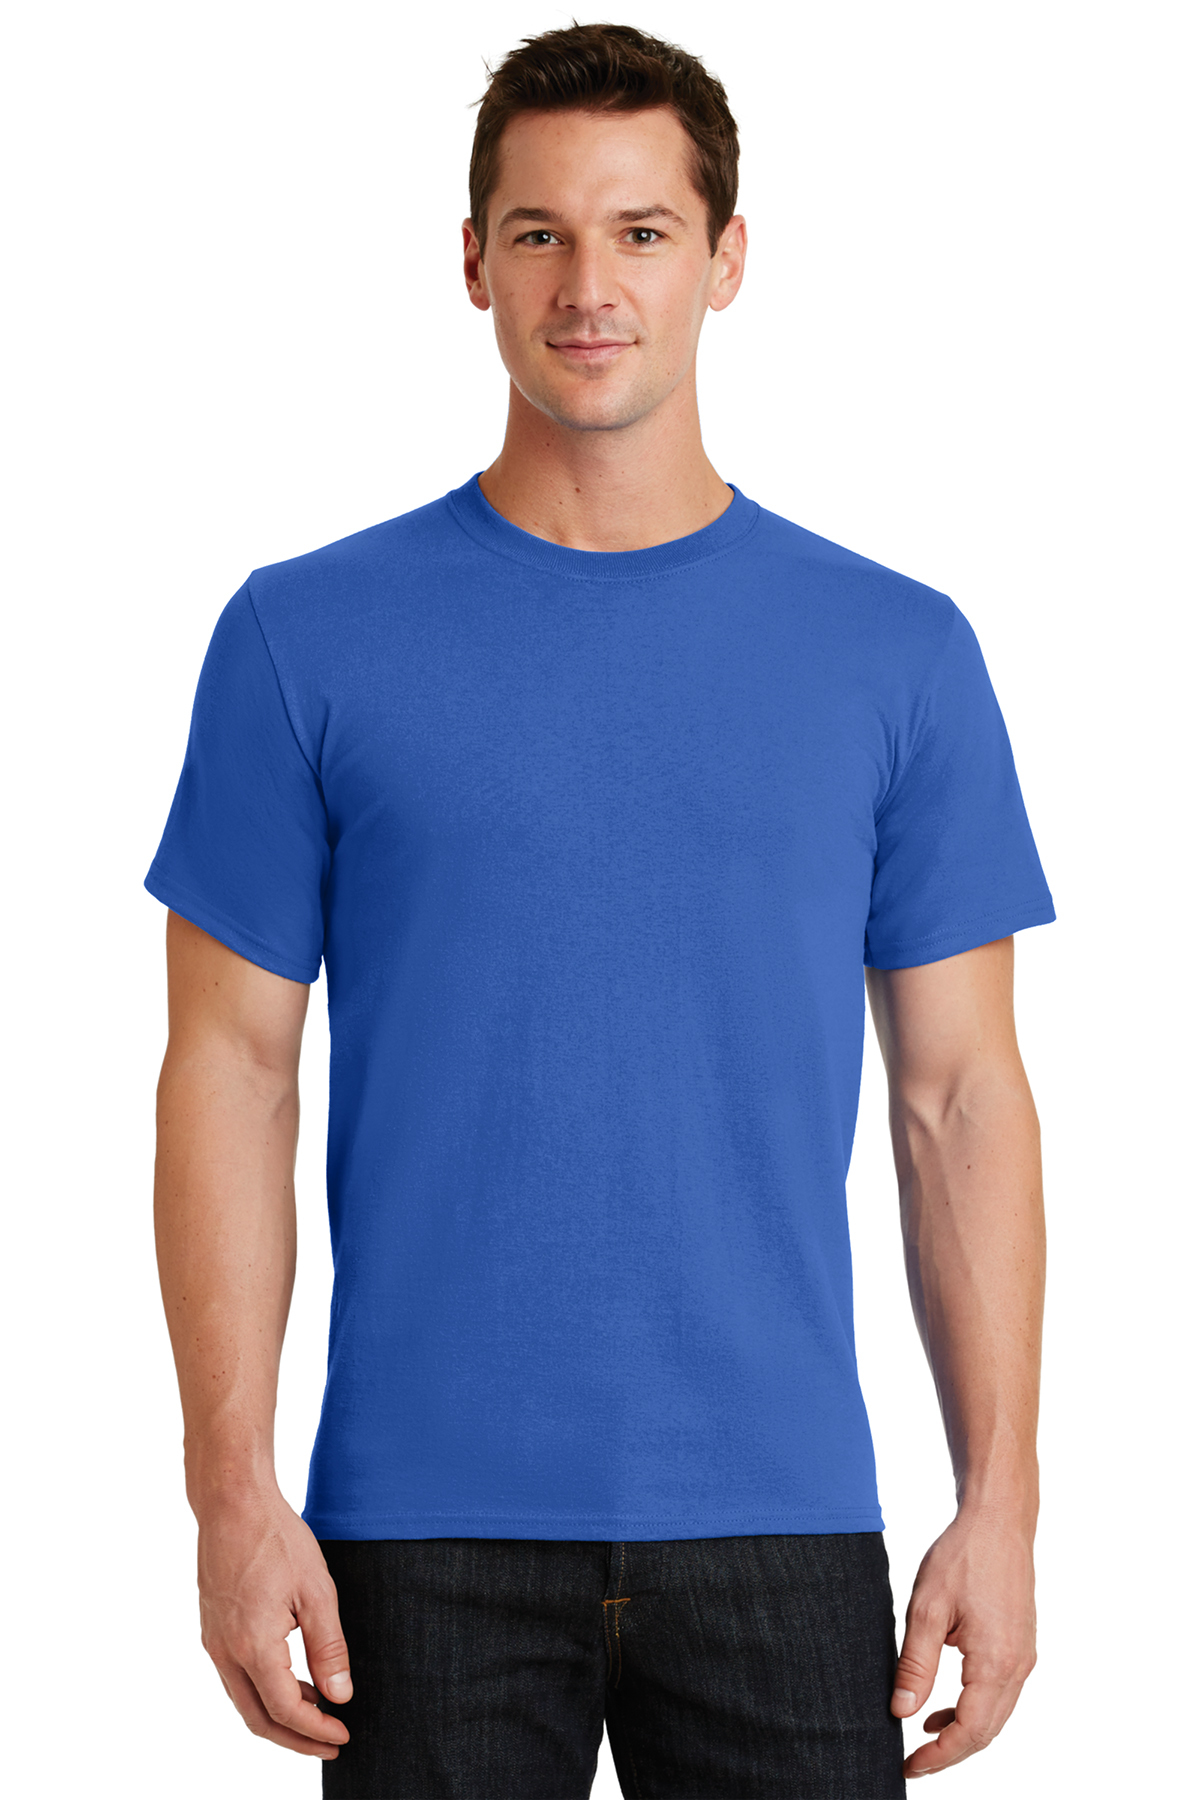 T shirt royal blue – TSE, Inc.